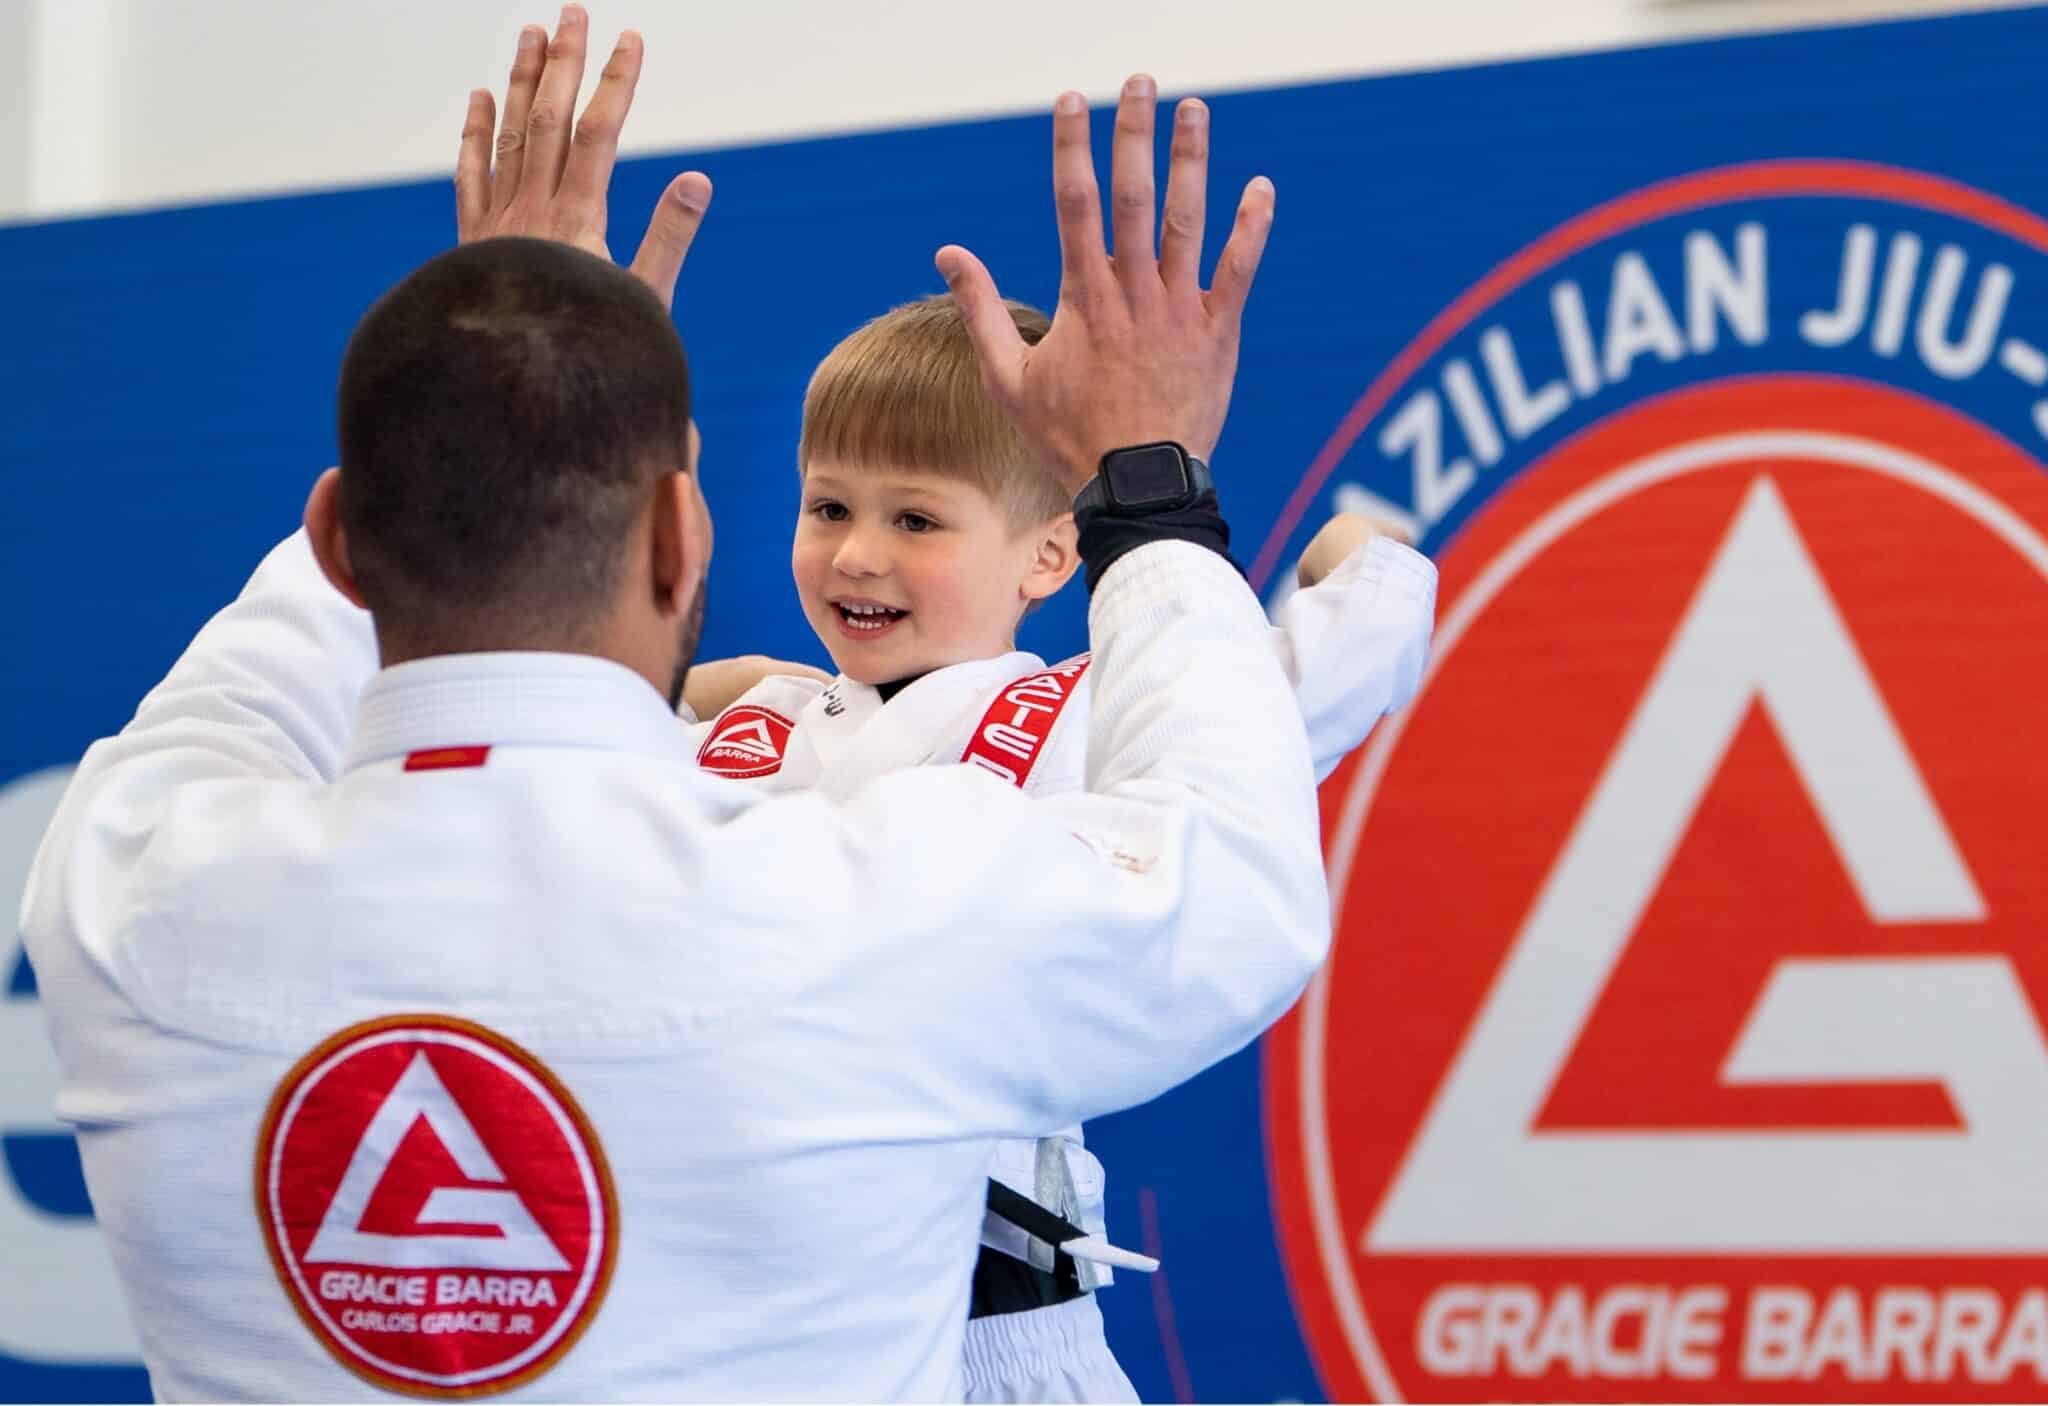 happy child doing brazilian jiu jitsu